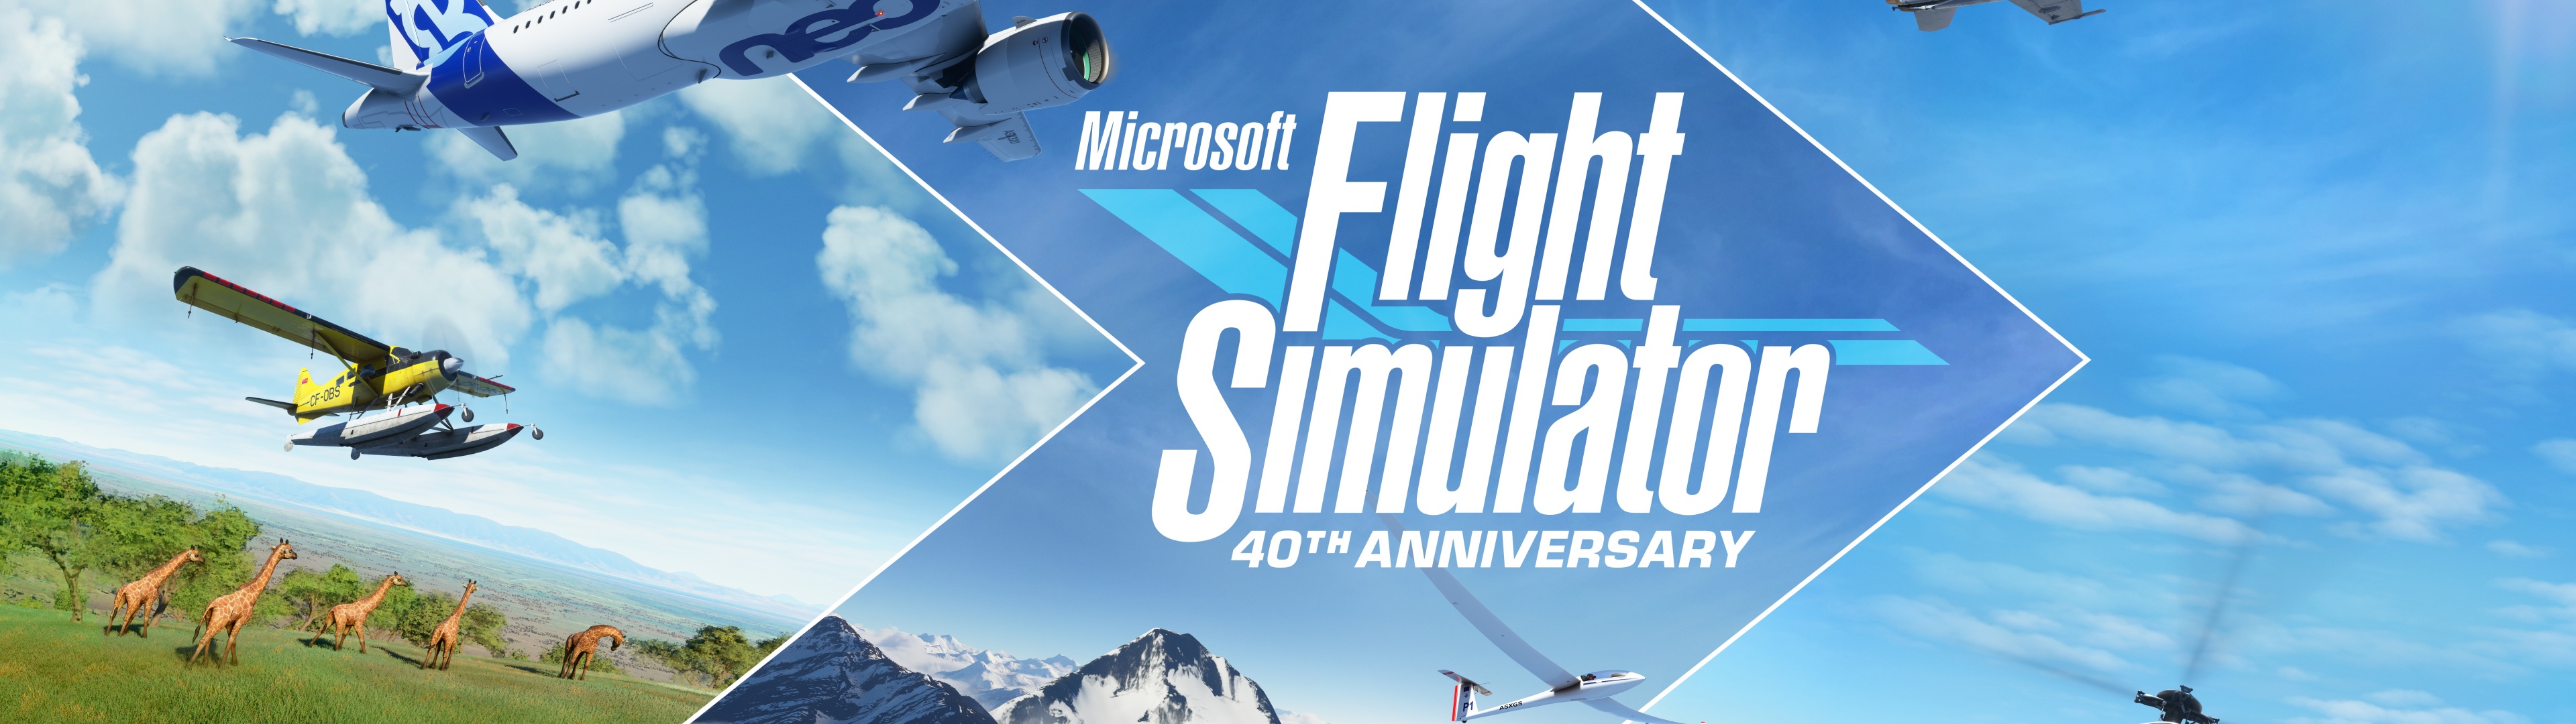 Microsoft Flight Simulator Wallpapers  Wallpaper Cave